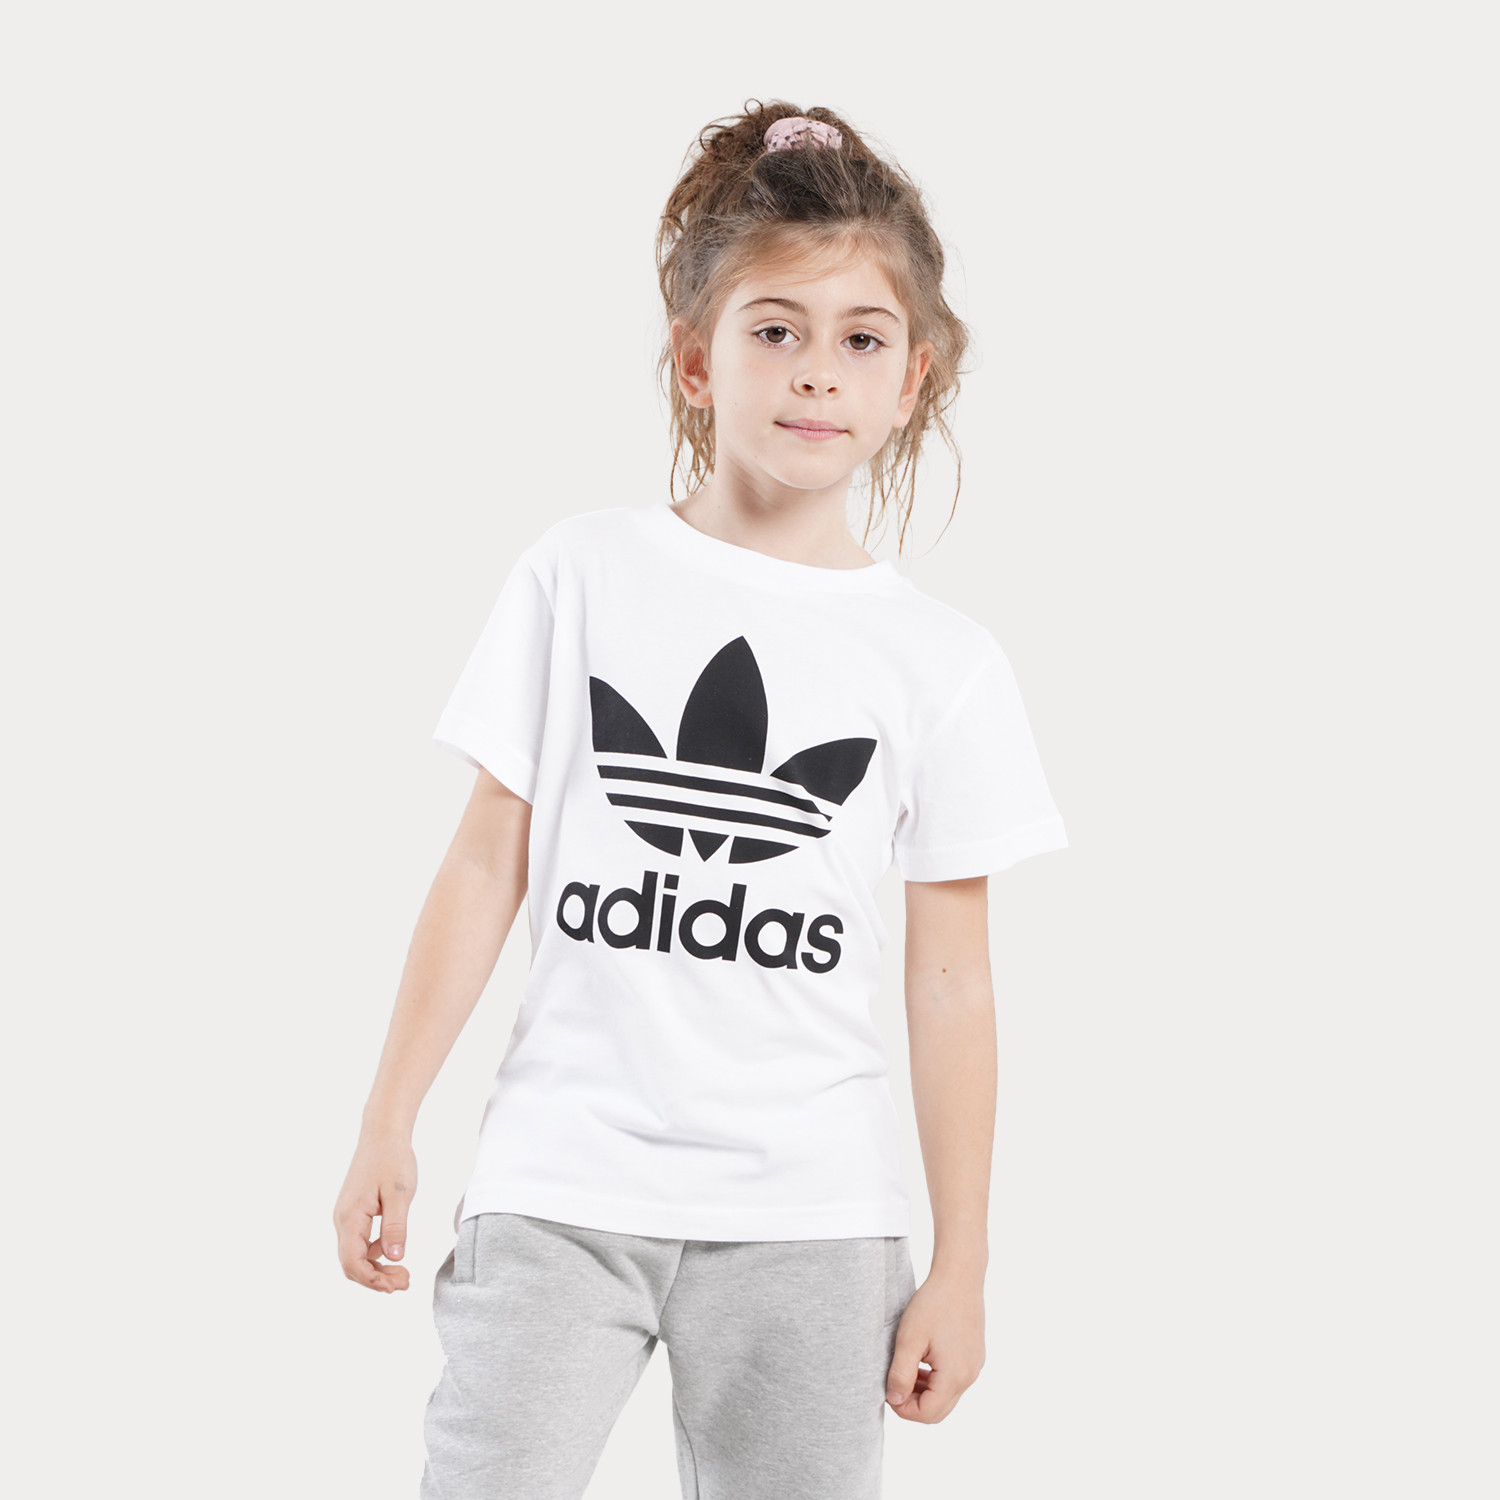 adidas Originals Trefoil Παιδικό T-Shirt (9000022680_1540)